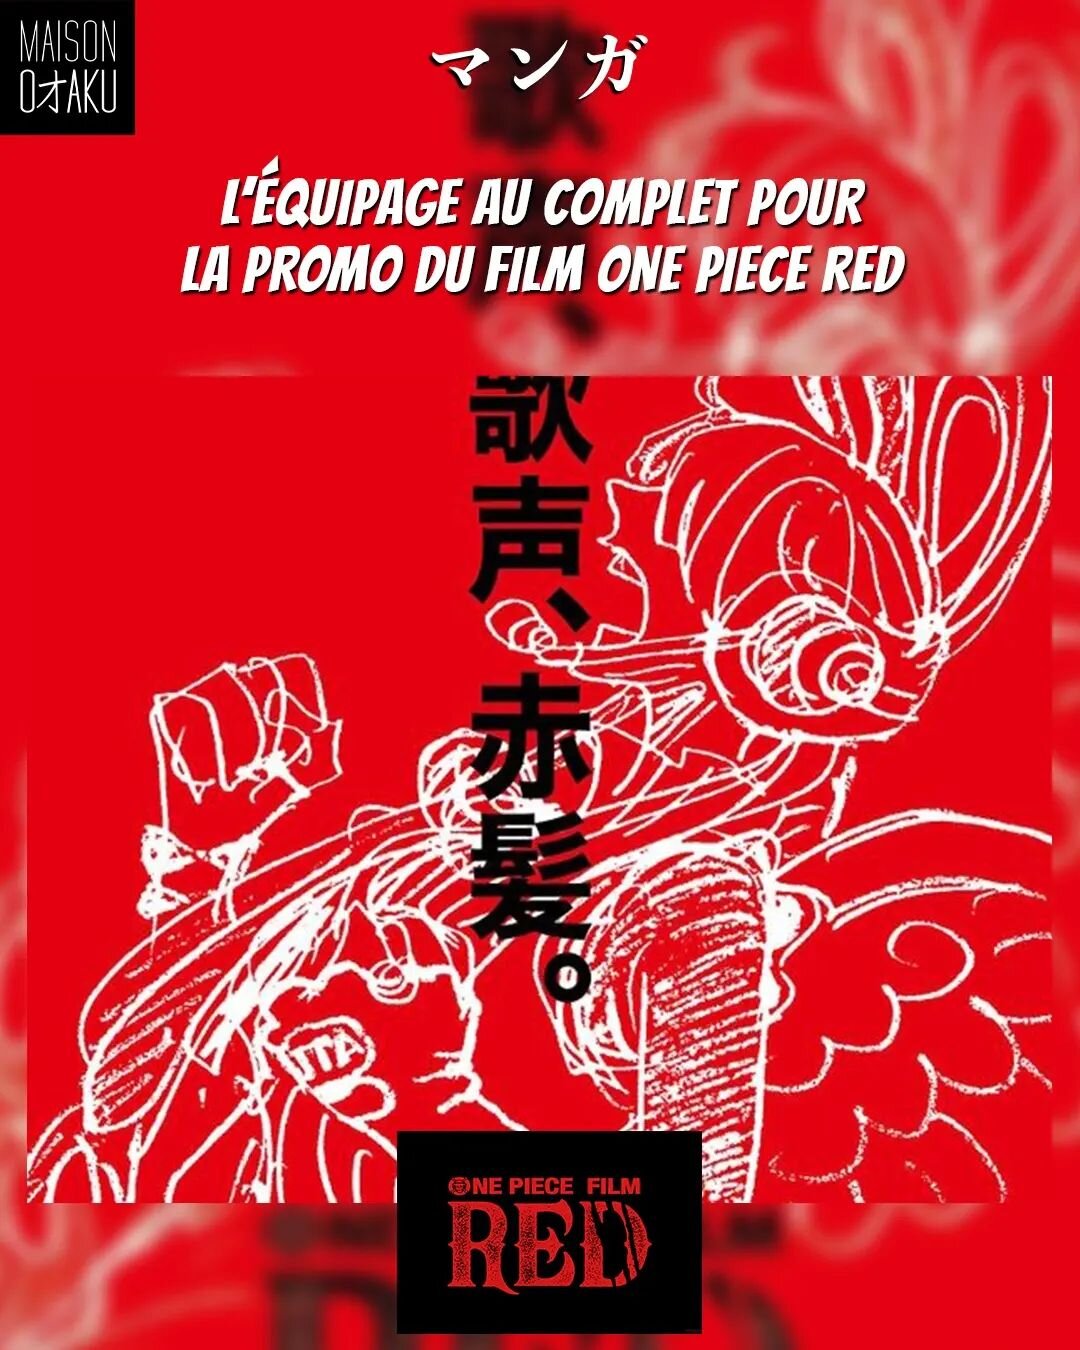 [#onepiecered] ☠️🚩

📣Toutes les affiches de One Piece Red avec l'&eacute;quipage sont sorties !

🔔Pour rappel le film sort le 06 ao&ucirc;t au Japon !

🤔 Quel est votre design pr&eacute;f&eacute;r&eacute; l'Otacrew ? 

Et ce soir on d&eacute;couv